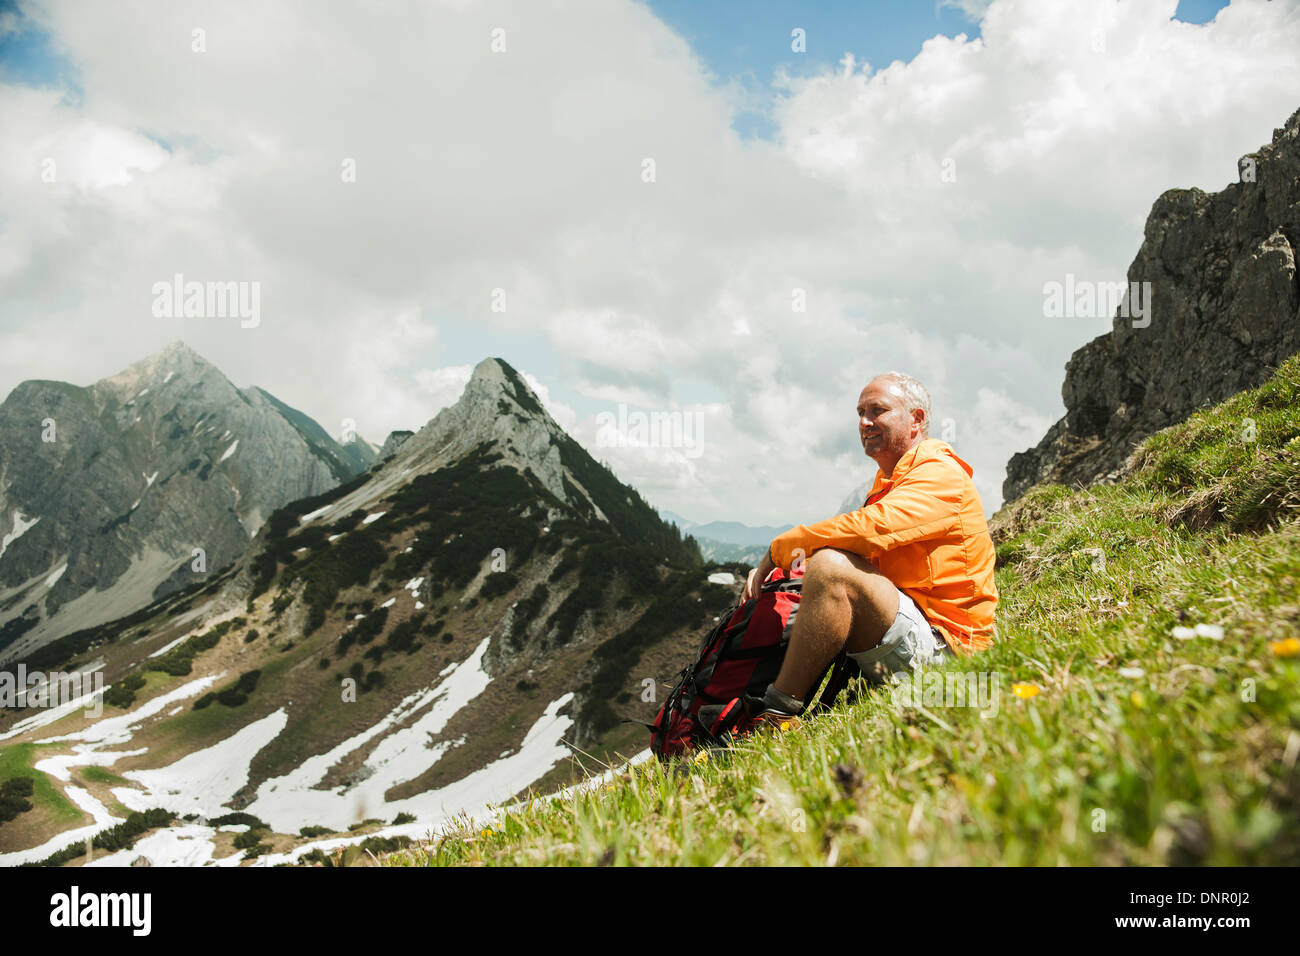 Man sitting on grass, randonnées en montagne, vallée de Tannheim, Autriche Banque D'Images